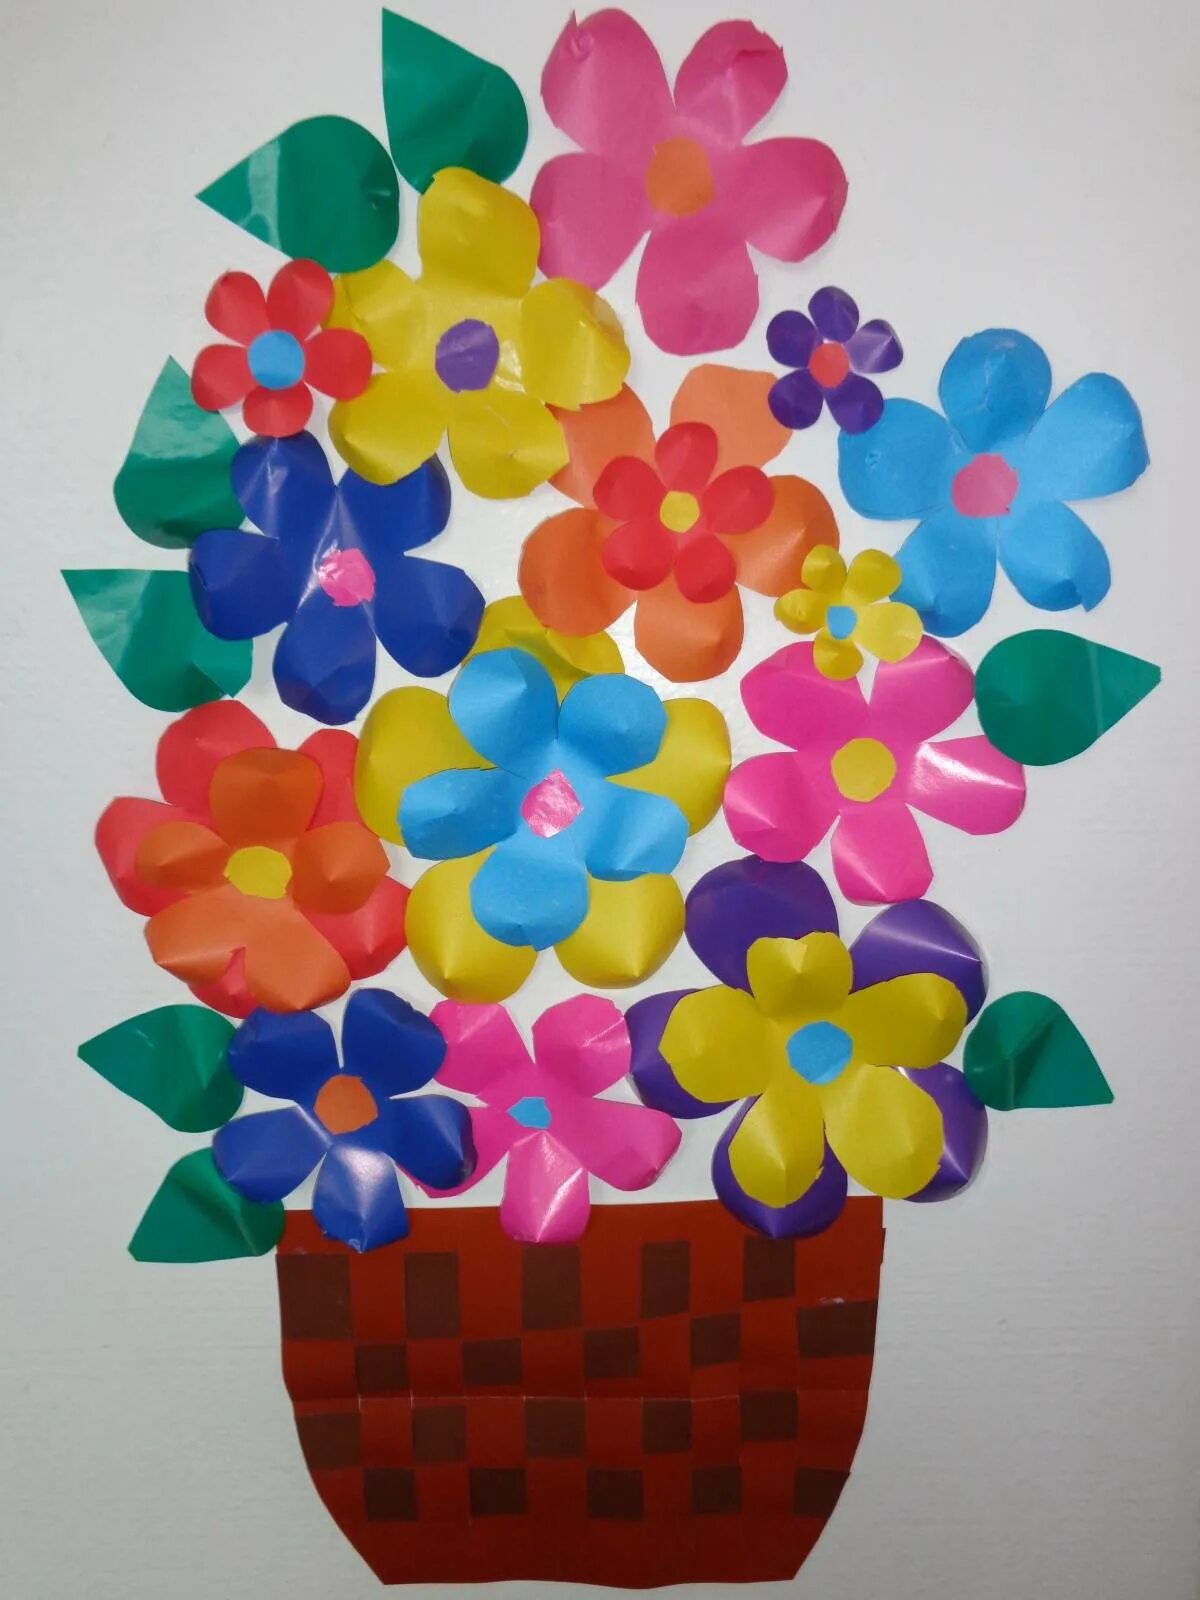 Аппликация красивый букет в подарок средняя группа. Аппликация.цветы. Корзина с цветами из цветной бумаги. Аппликация ваза с цветами. Аппликация в средней группе.